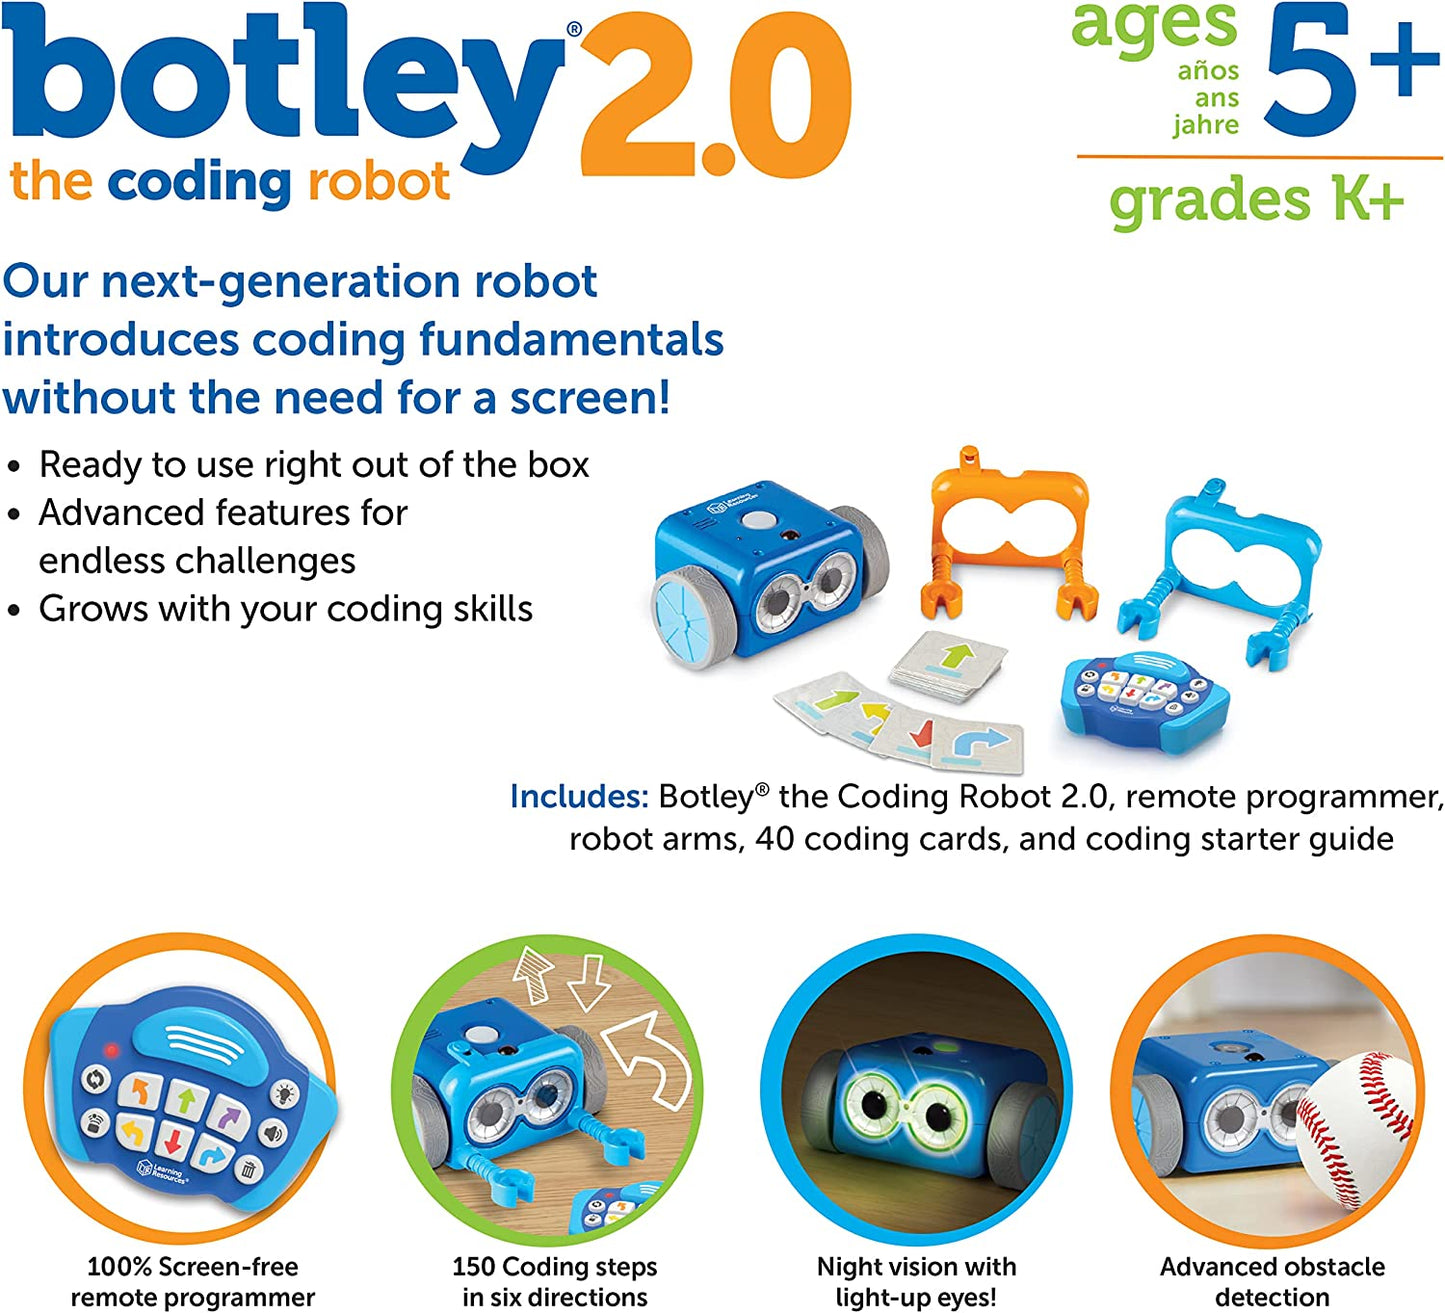 Botley 2.0 the Coding Robot